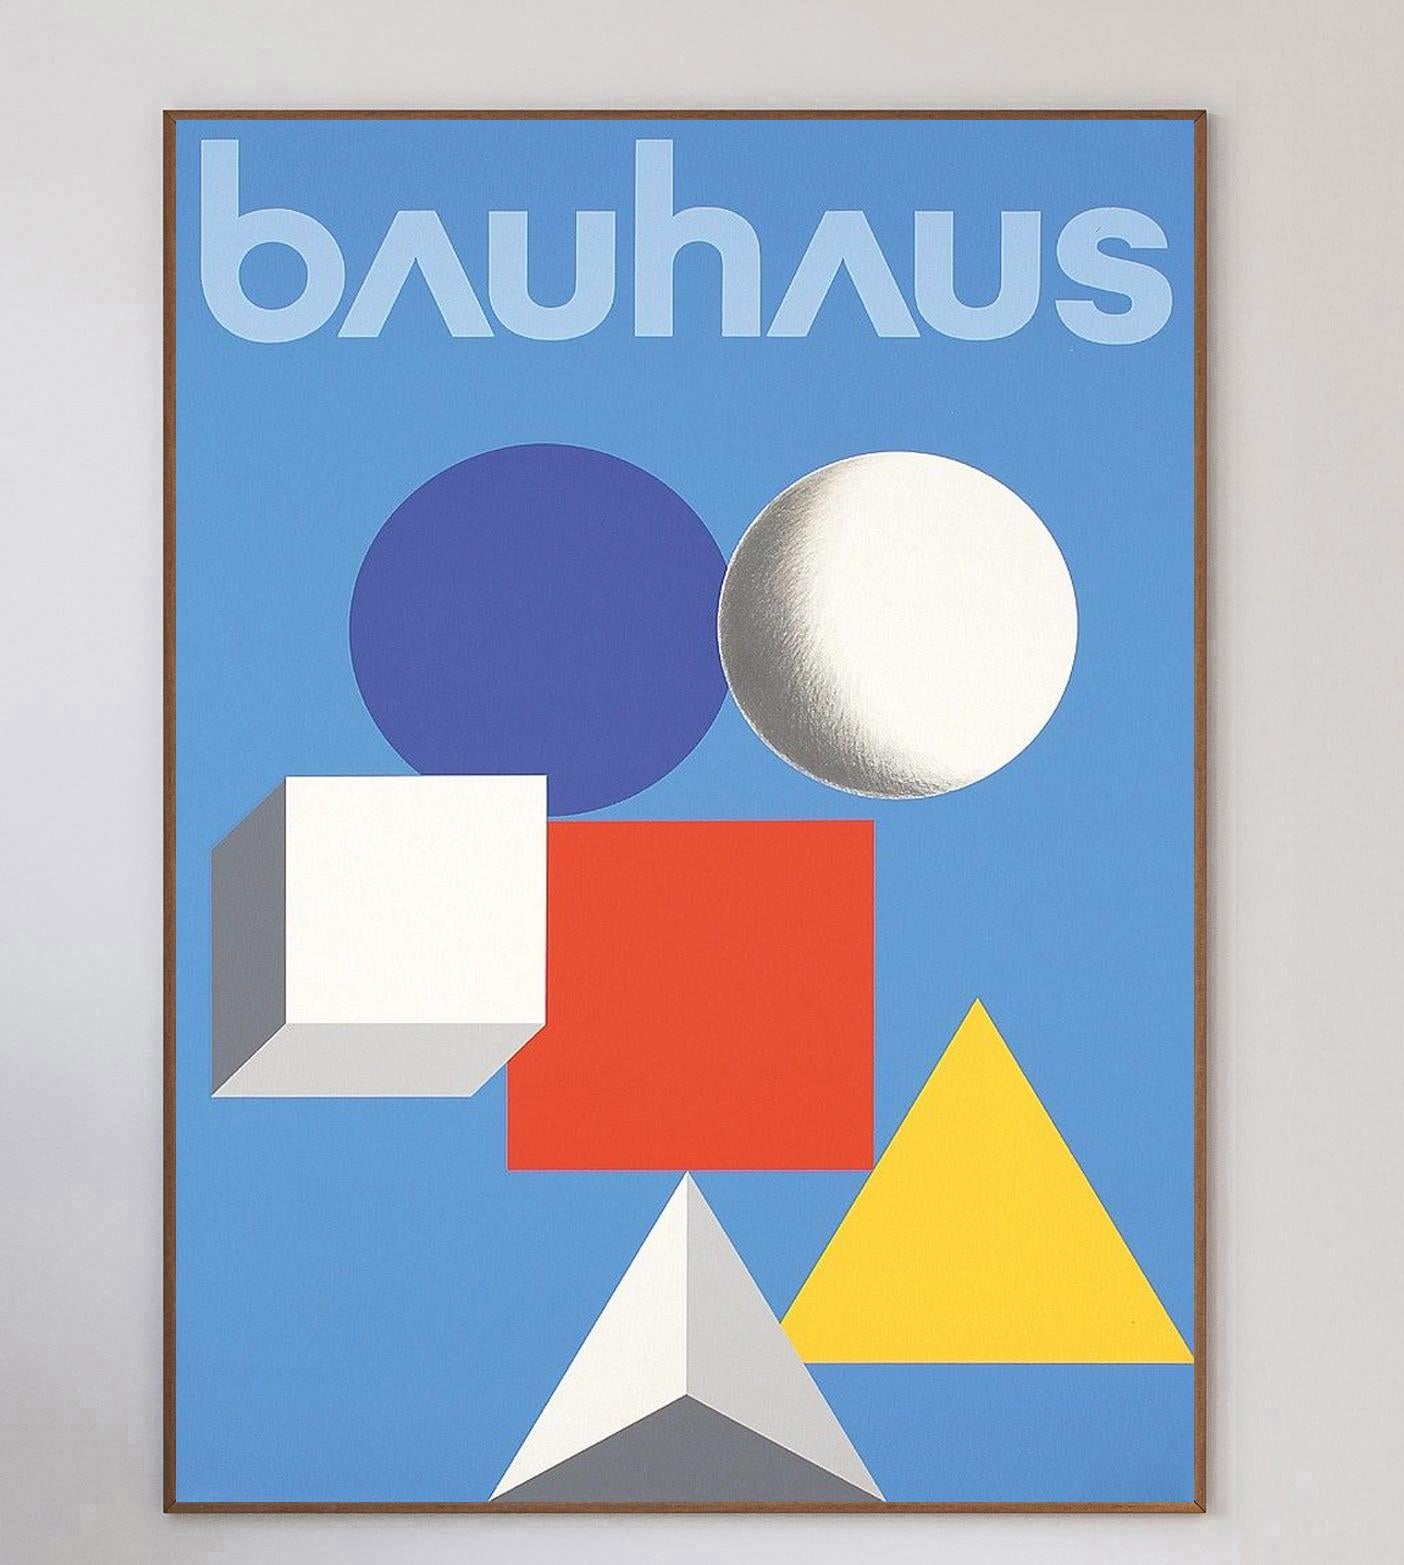 Le designer autrichien-américain Herbert Bayer a été l'un des étudiants et professeurs les plus influents du Bauhaus. Fondée par Walter Gropius en 1919, l'école d'art allemande n'a duré que 14 ans, mais son impact et son influence sur l'art et le